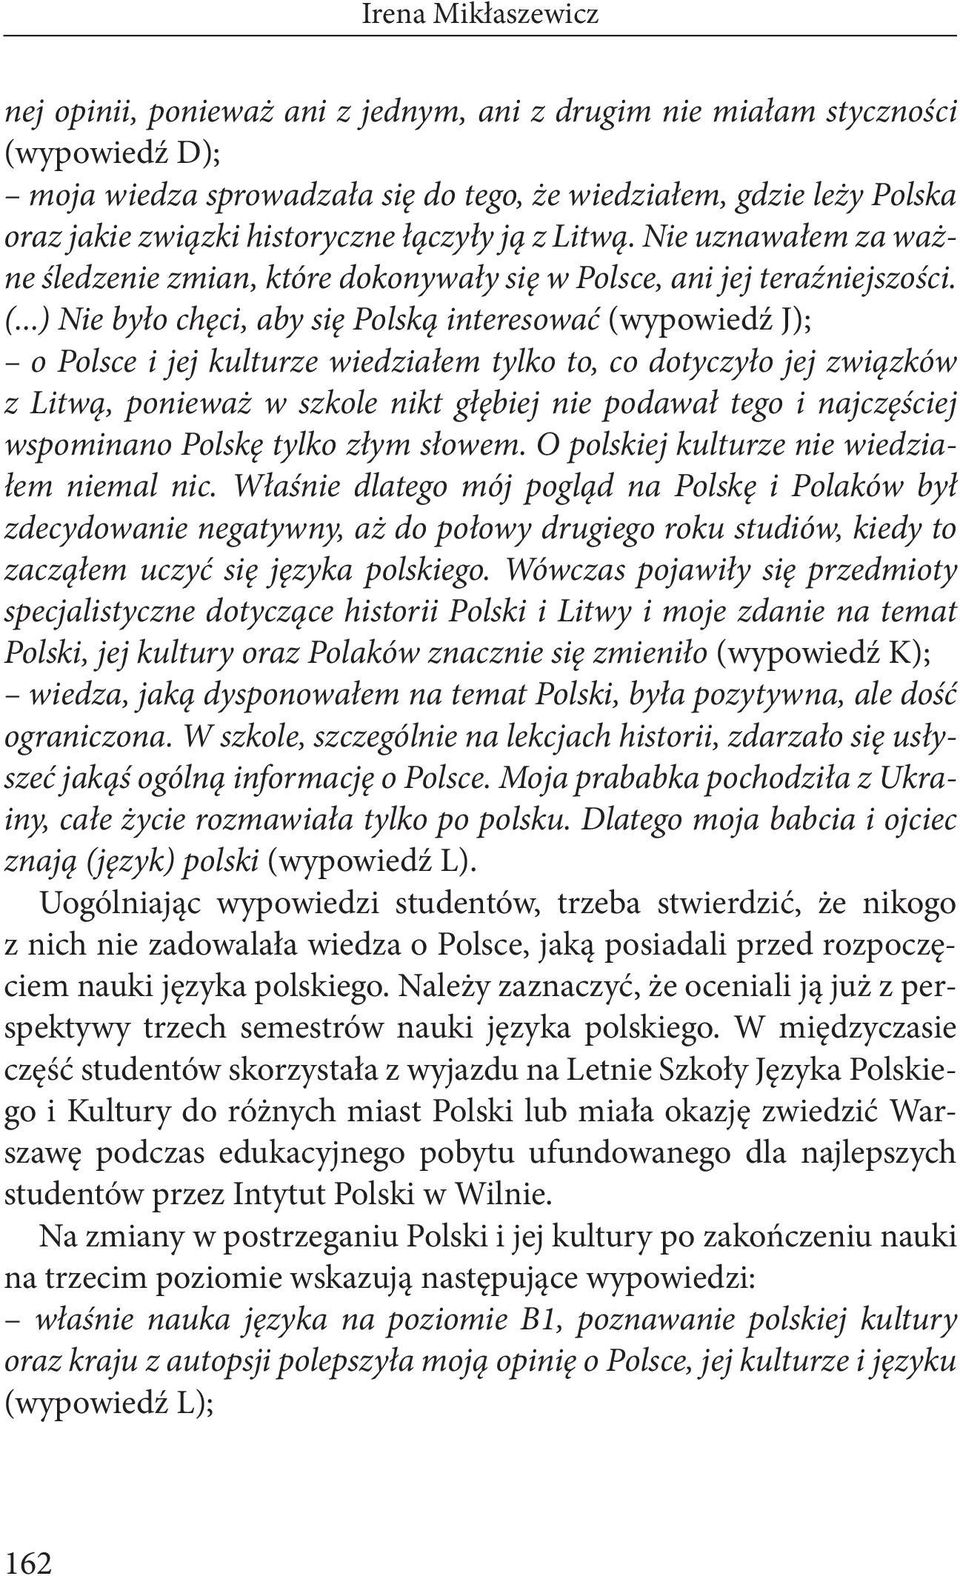 ..) Nie było chęci, aby się Polską interesować (wypowiedź J); o Polsce i jej kulturze wiedziałem tylko to, co dotyczyło jej związków z Litwą, ponieważ w szkole nikt głębiej nie podawał tego i